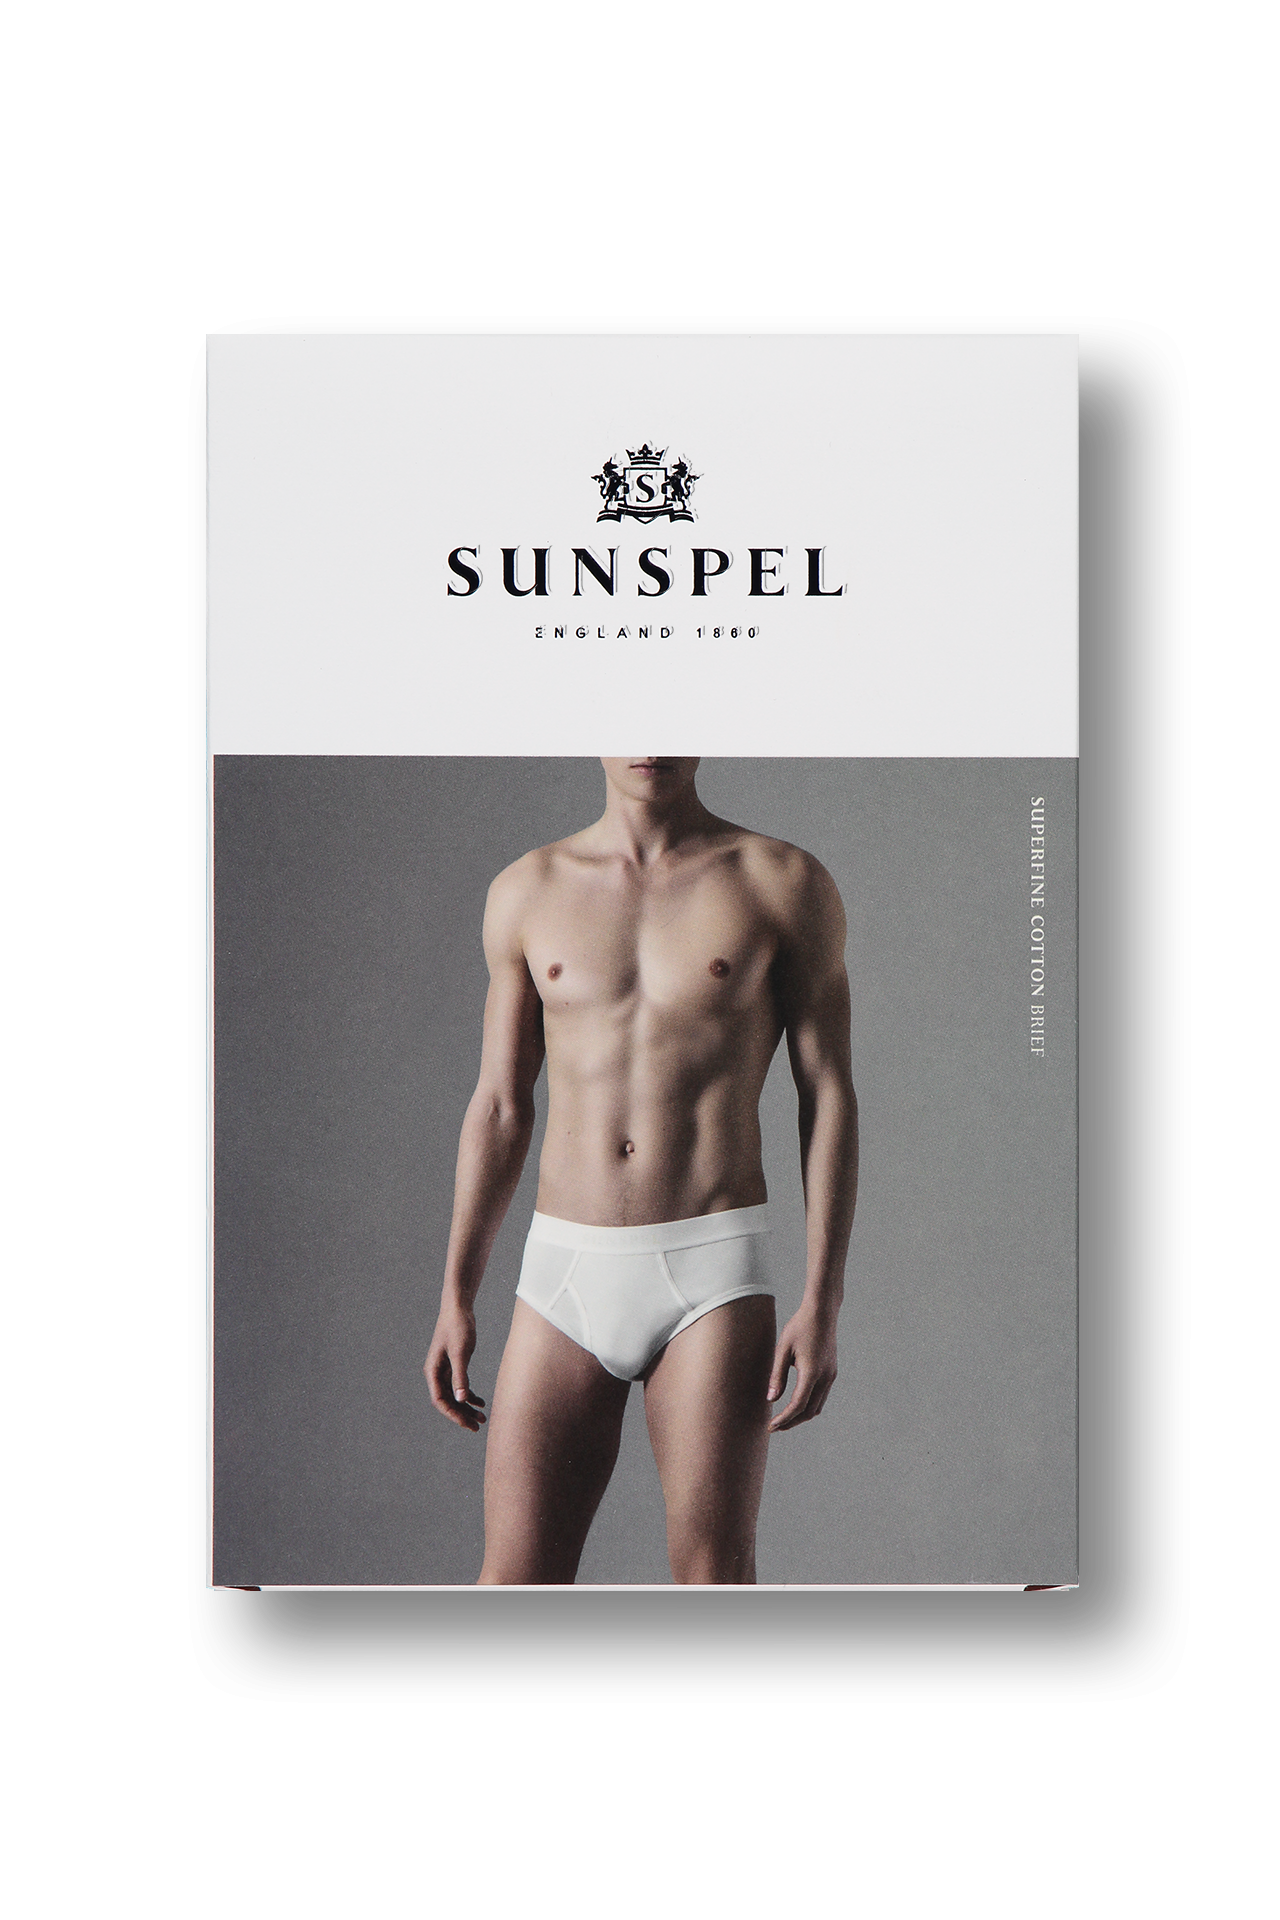 Sunspel Superfine Brief in Black - Image of Packaging (4371184844915)